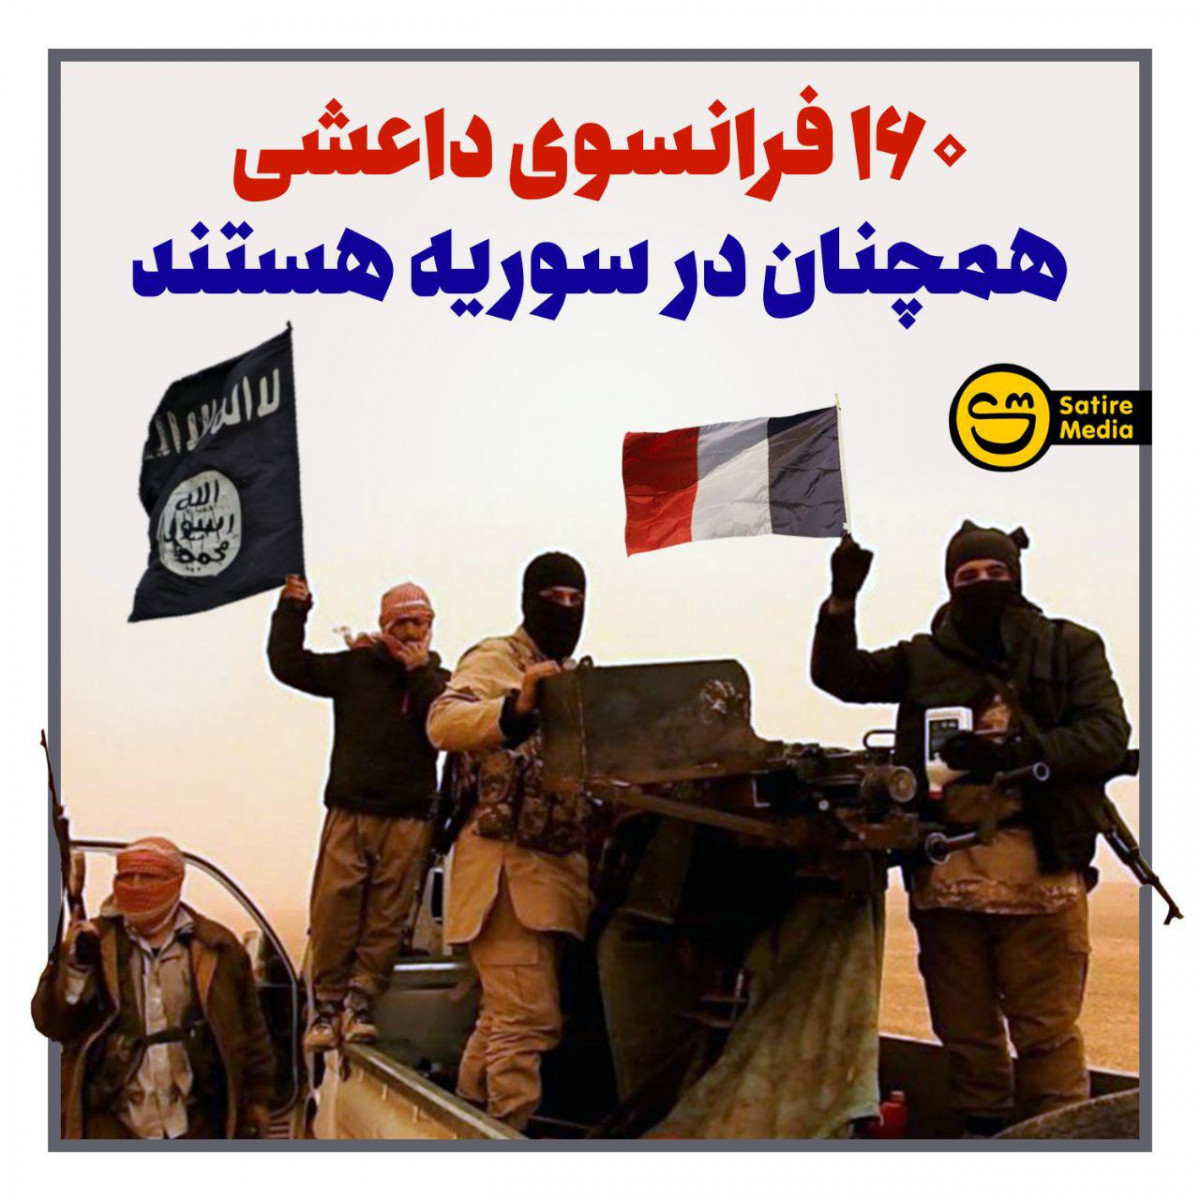 پوستر: ۱۶۰ فرانسوی داعشی همچنان در سوریه هستند